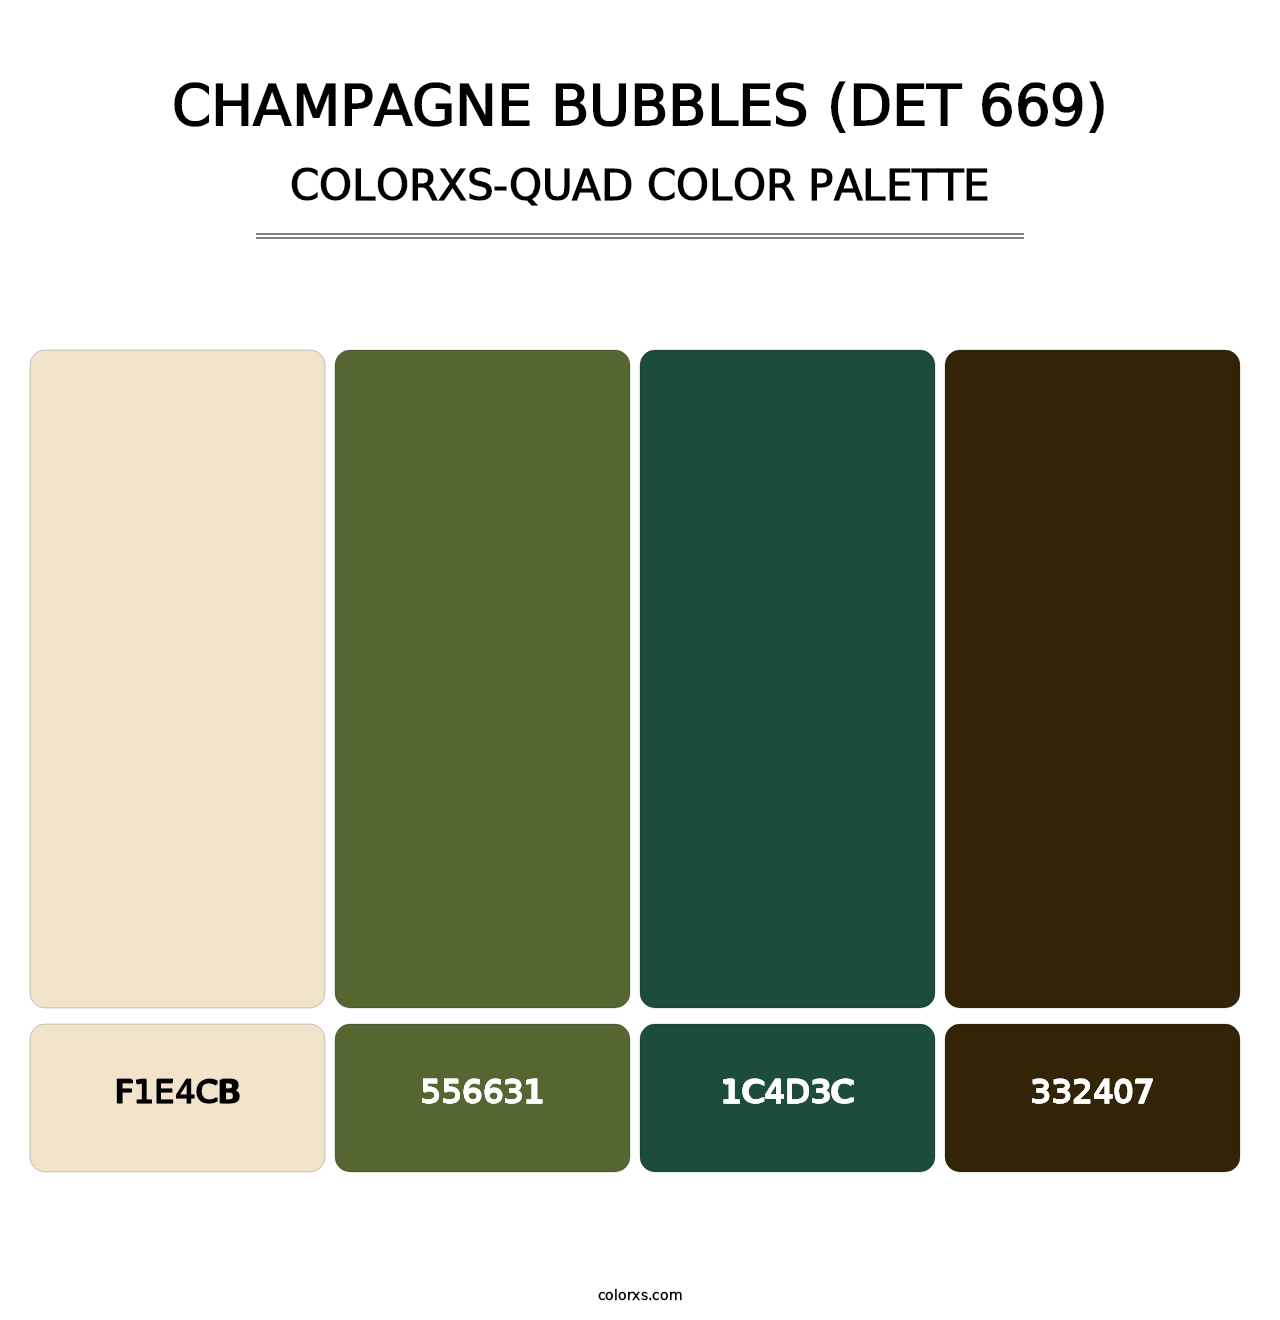 Champagne Bubbles (DET 669) - Colorxs Quad Palette